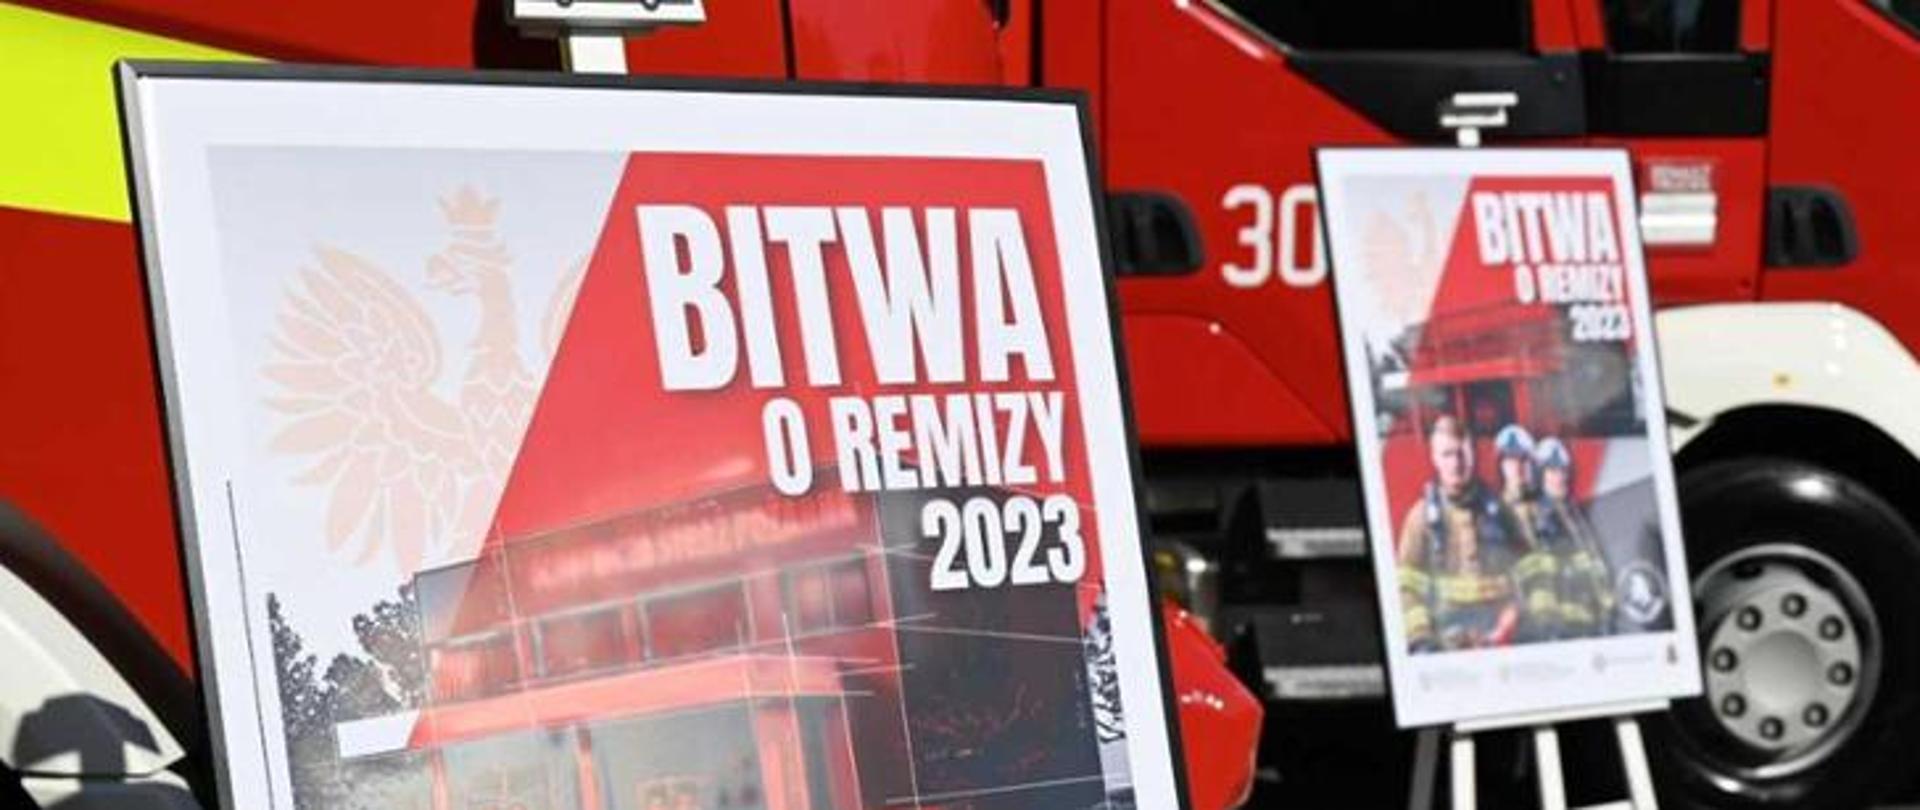 Na tle czerwonych bojowych samochodów strażacki stoi plakat z napisem bitwa o remizy 2023.